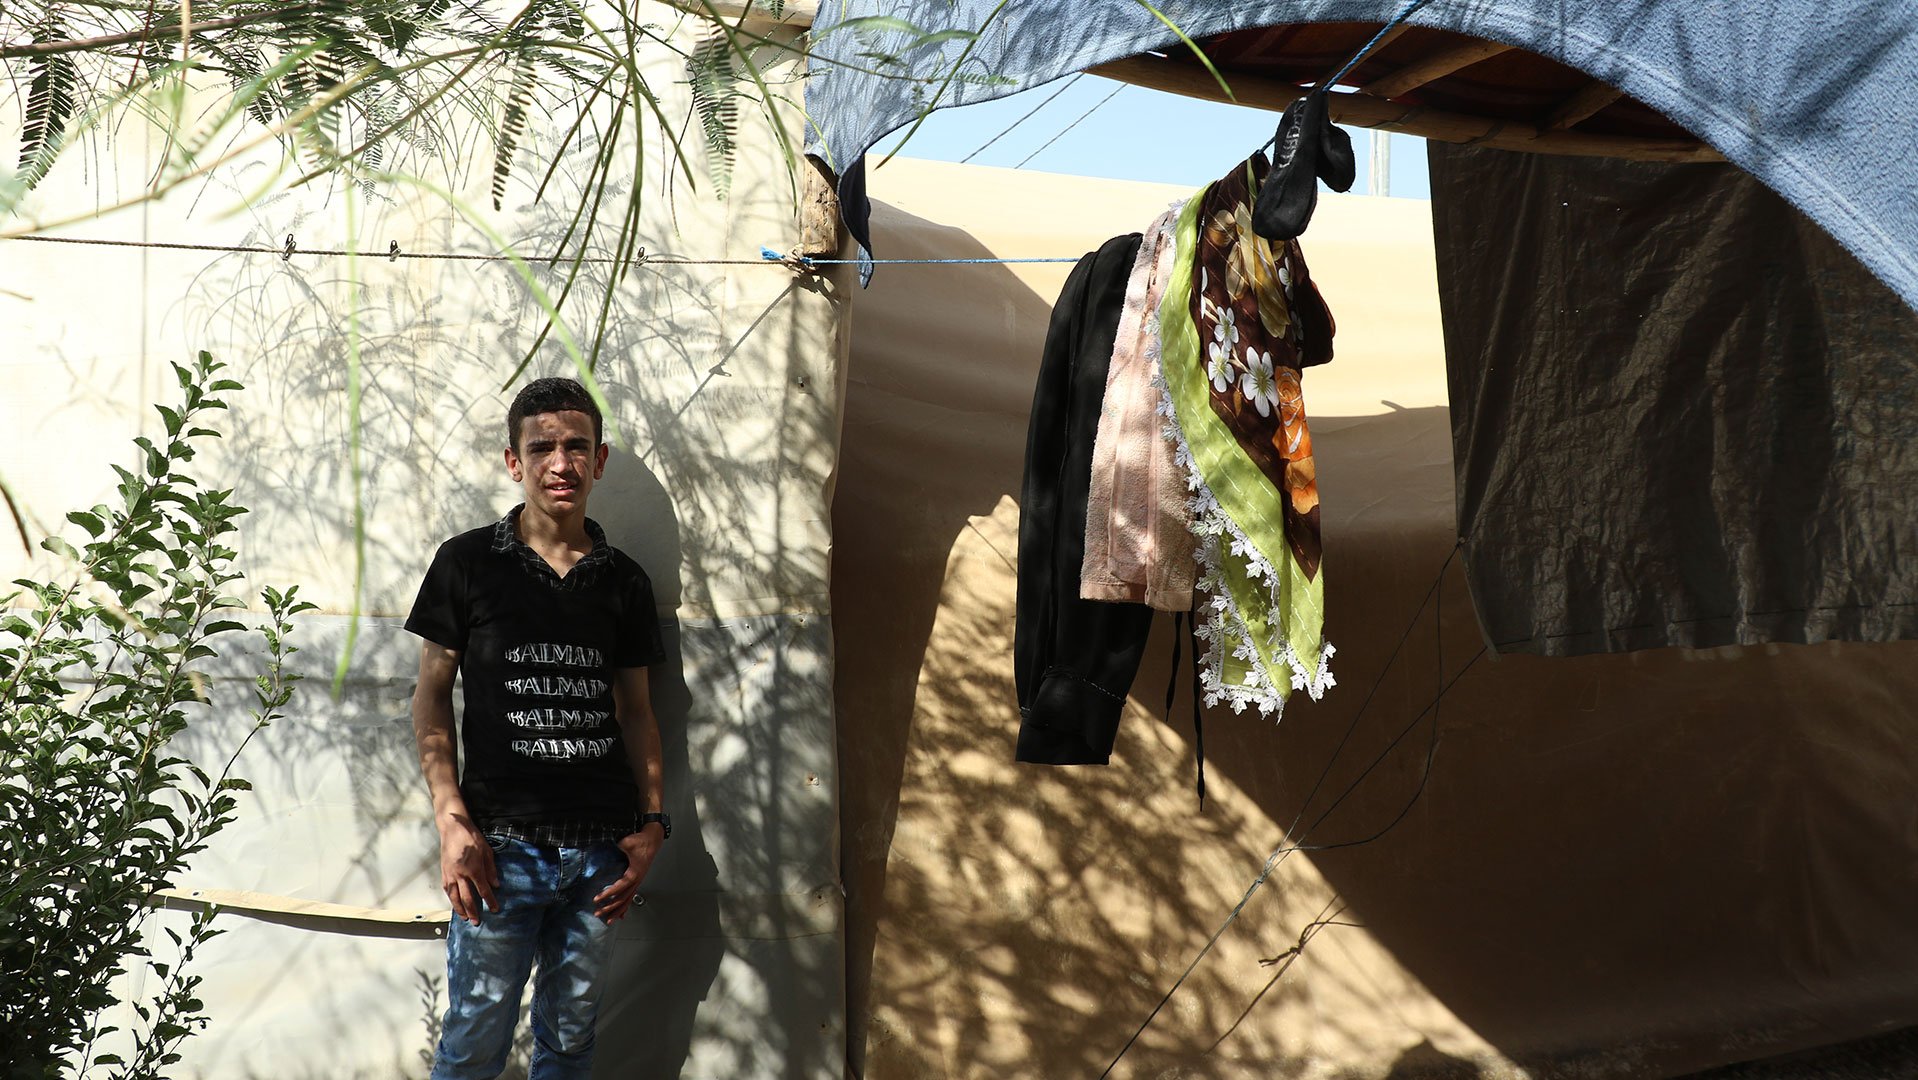 War Child helpt Irakese kinderen in oorlog weer kind zijn op veilige plekken